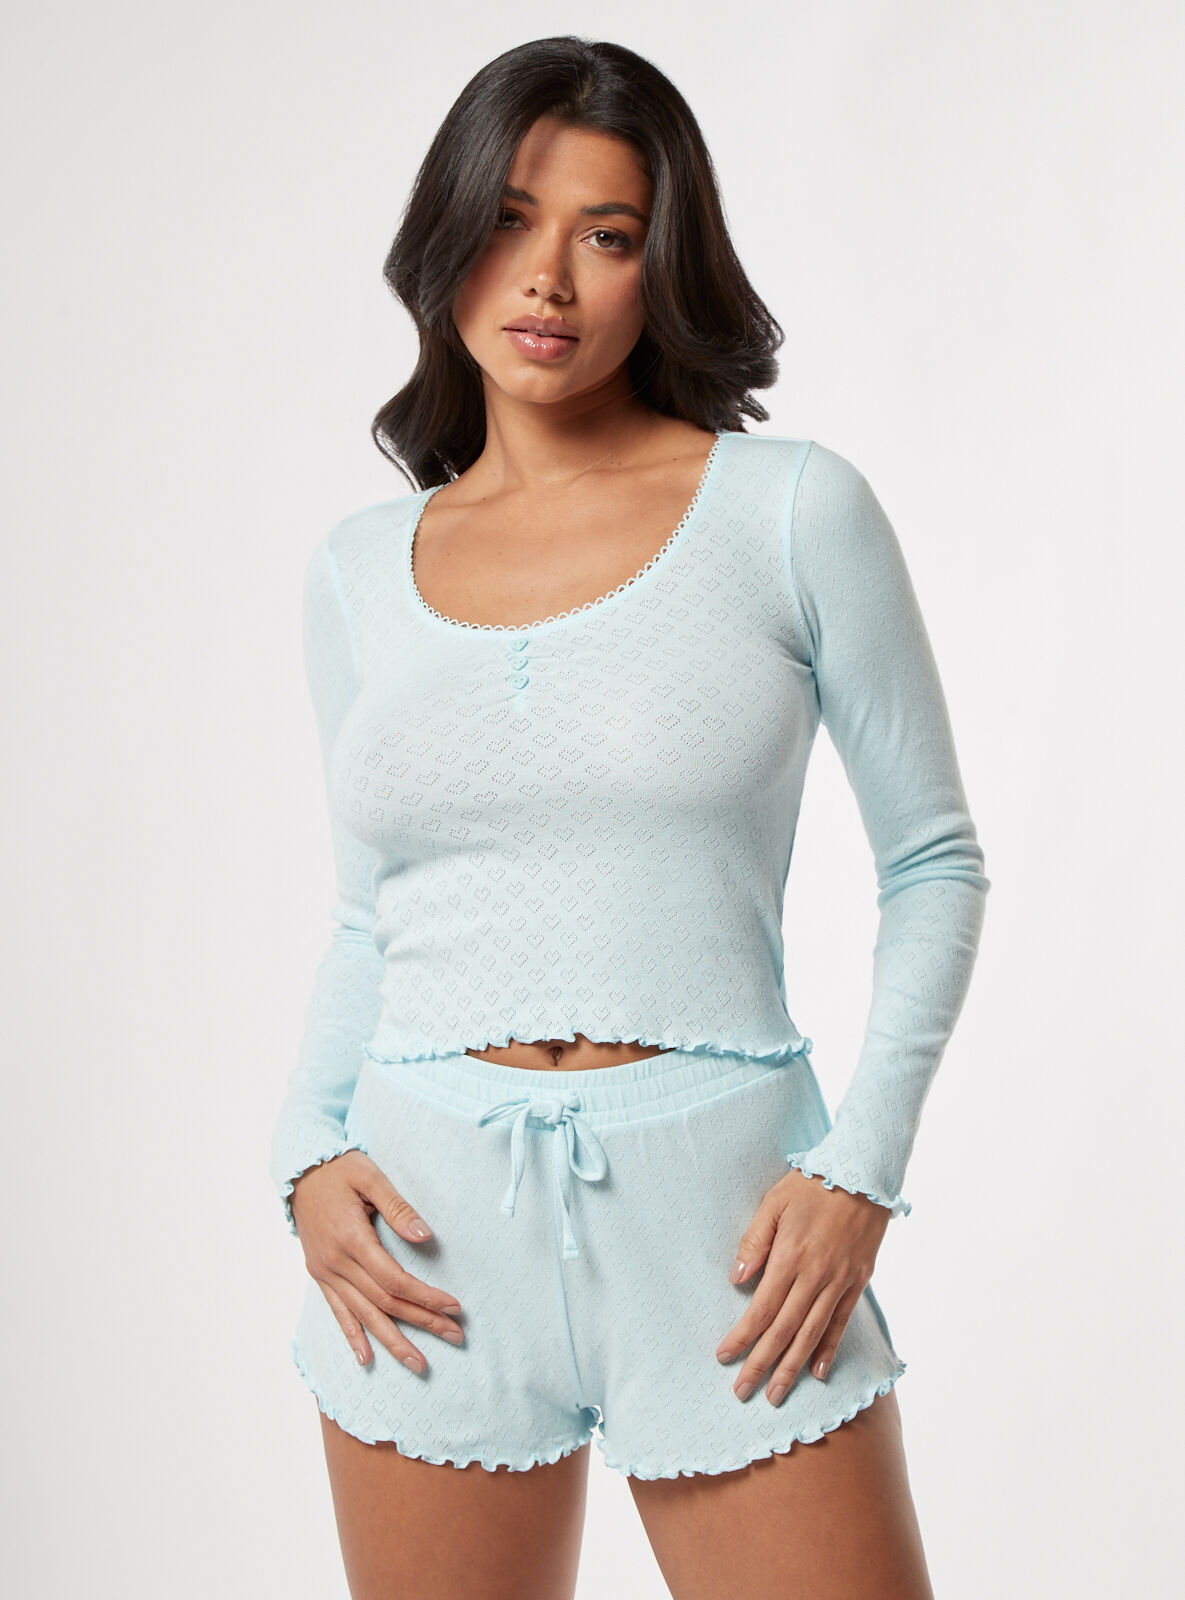 Boux Avenue Heart pointelle cotton short pyjama set - Aqua - 18